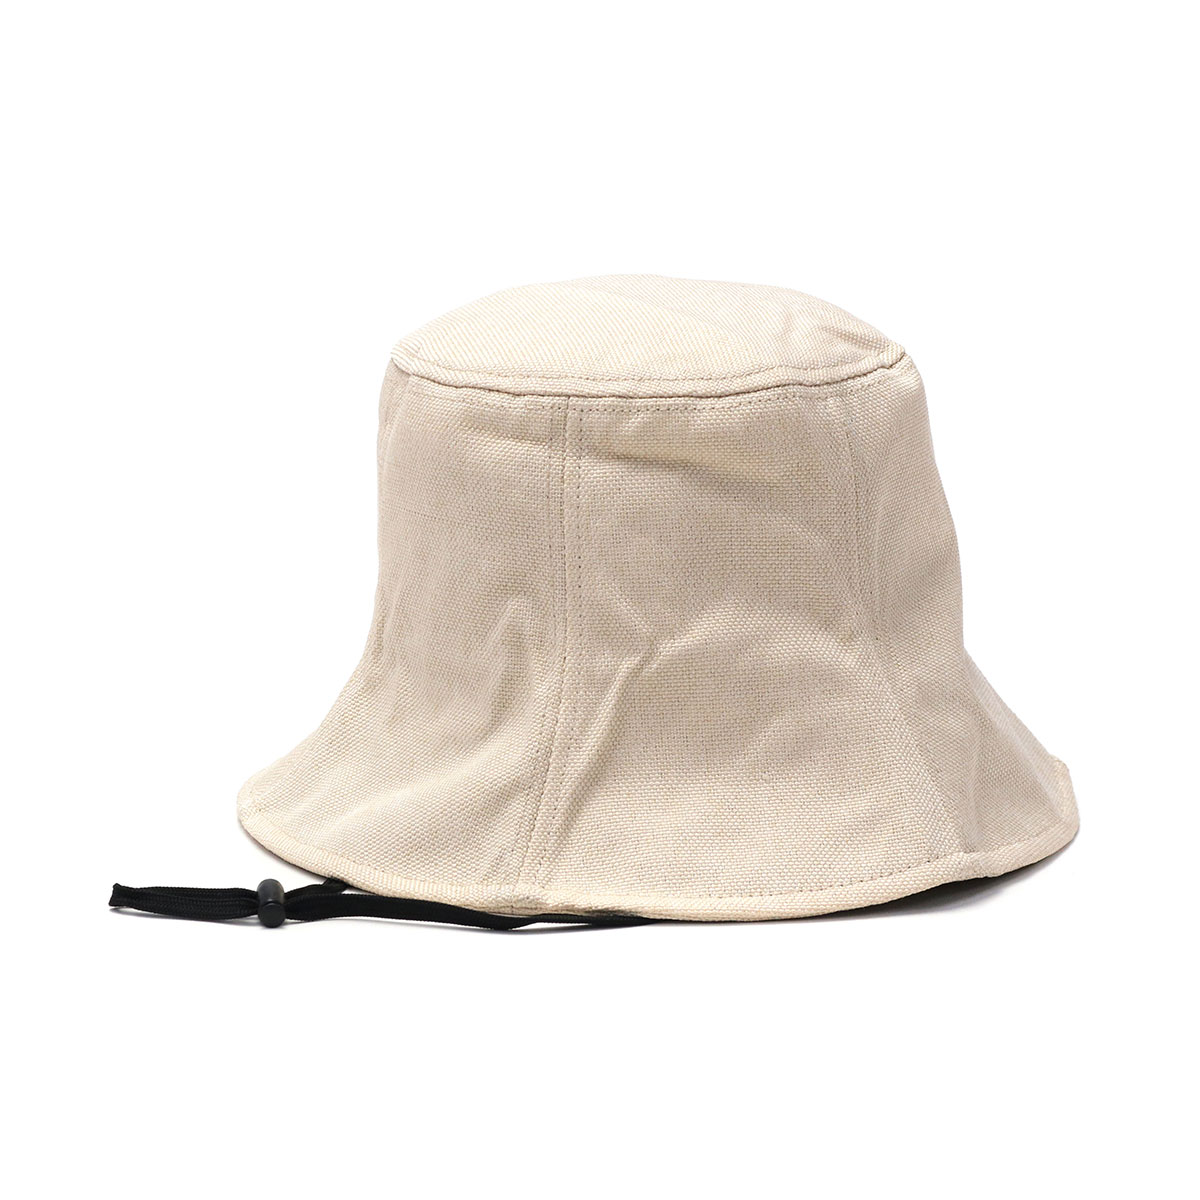 【メール便で送料無料】 Wpc. 帽子 ハット レディース 紫外線カット UVカット ダブリュピーシ...